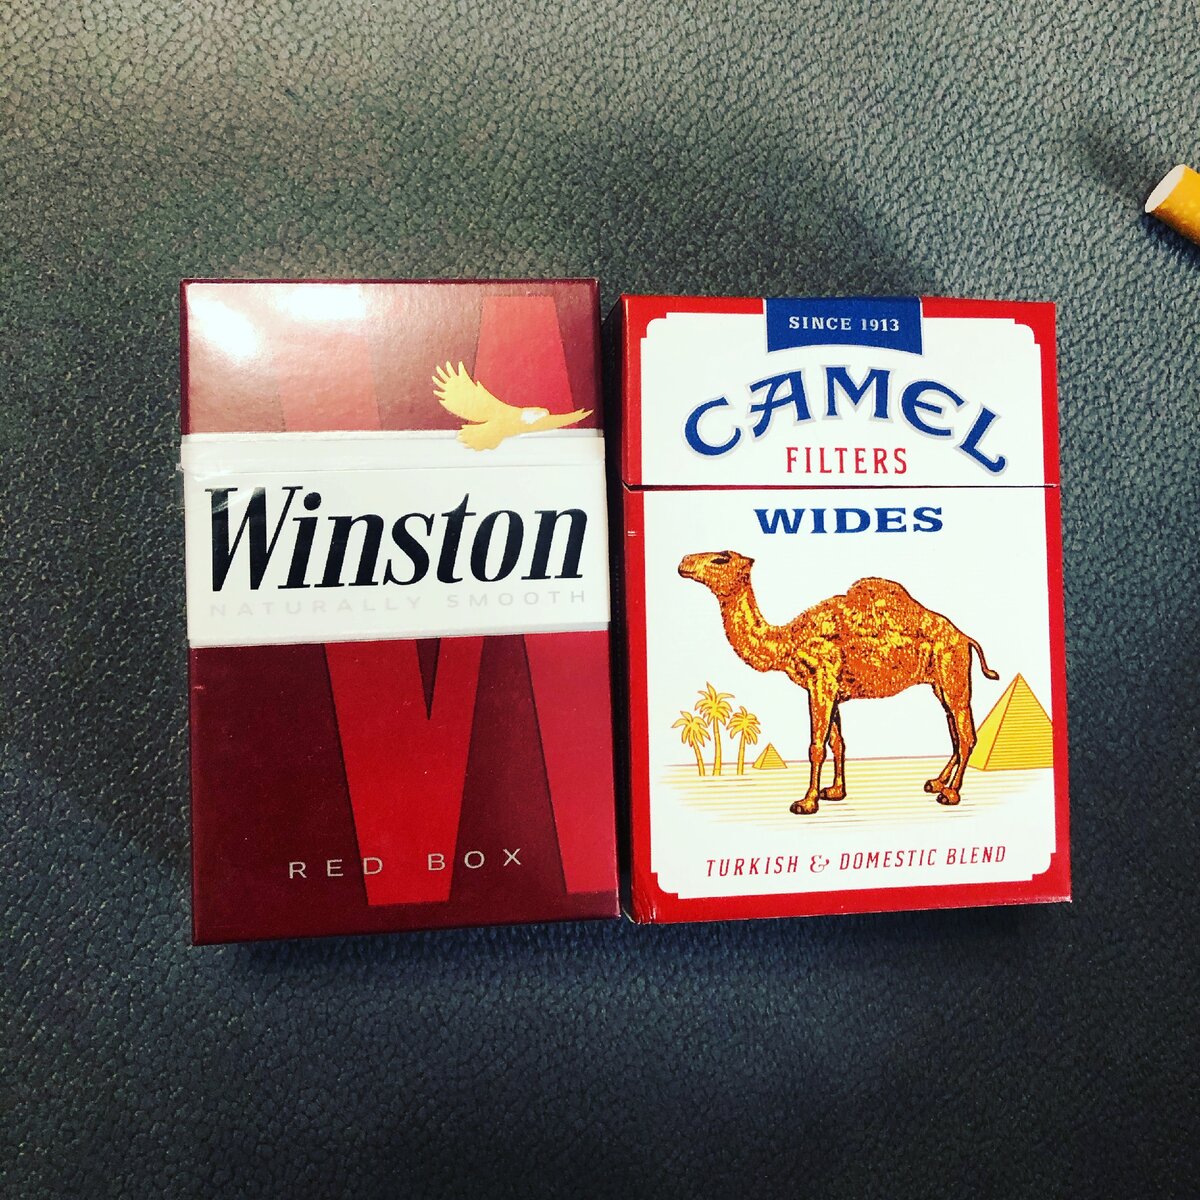 Camel какие вкусы. Camel 1913 пачка сигарет. Сигареты кэмел wides. Camel 40 сигареты. Сигареты Camel 1913.